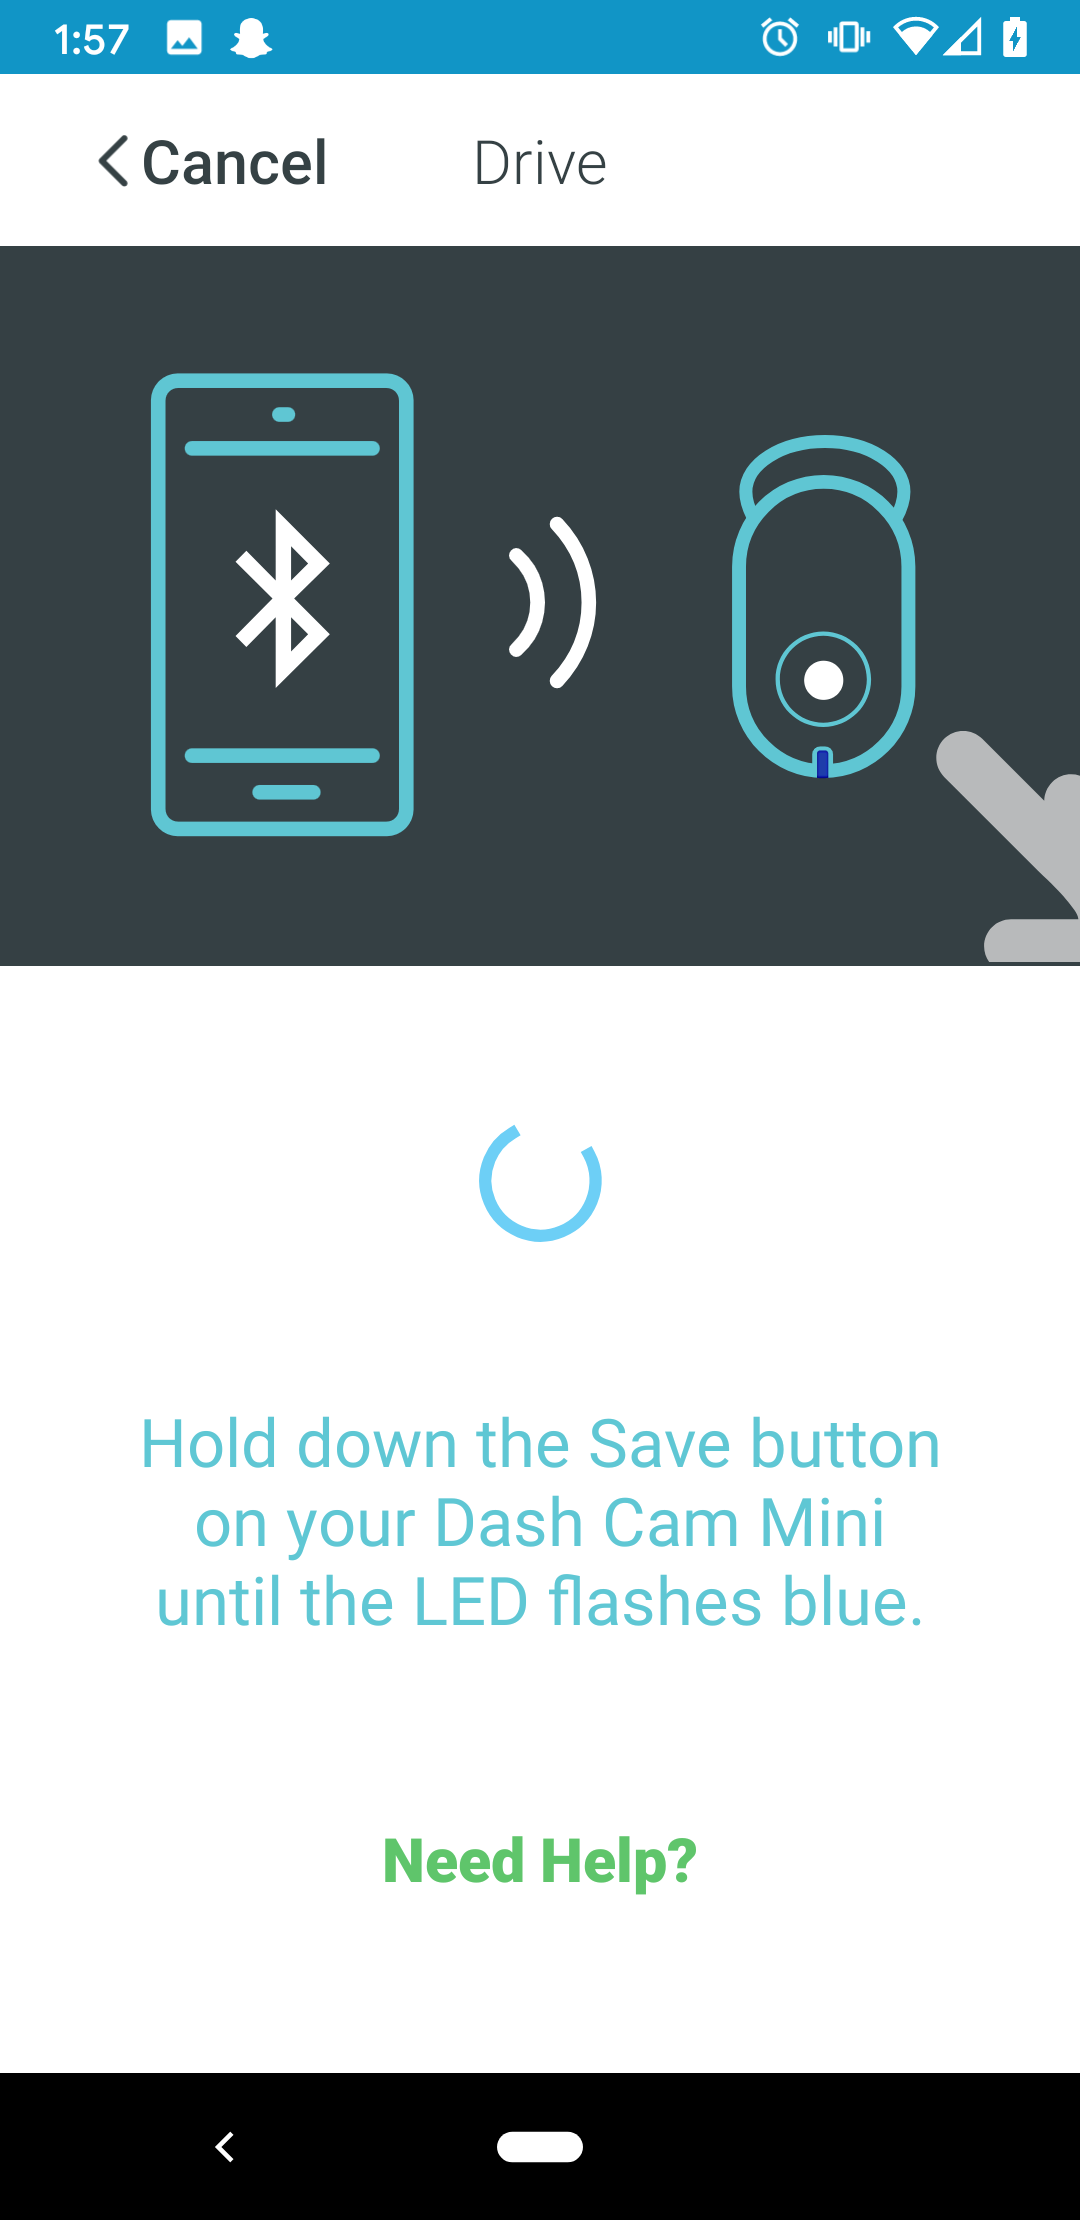 quagga ironi Undertrykkelse Garmin Dash Cam™ Mini | Garmin Customer Support